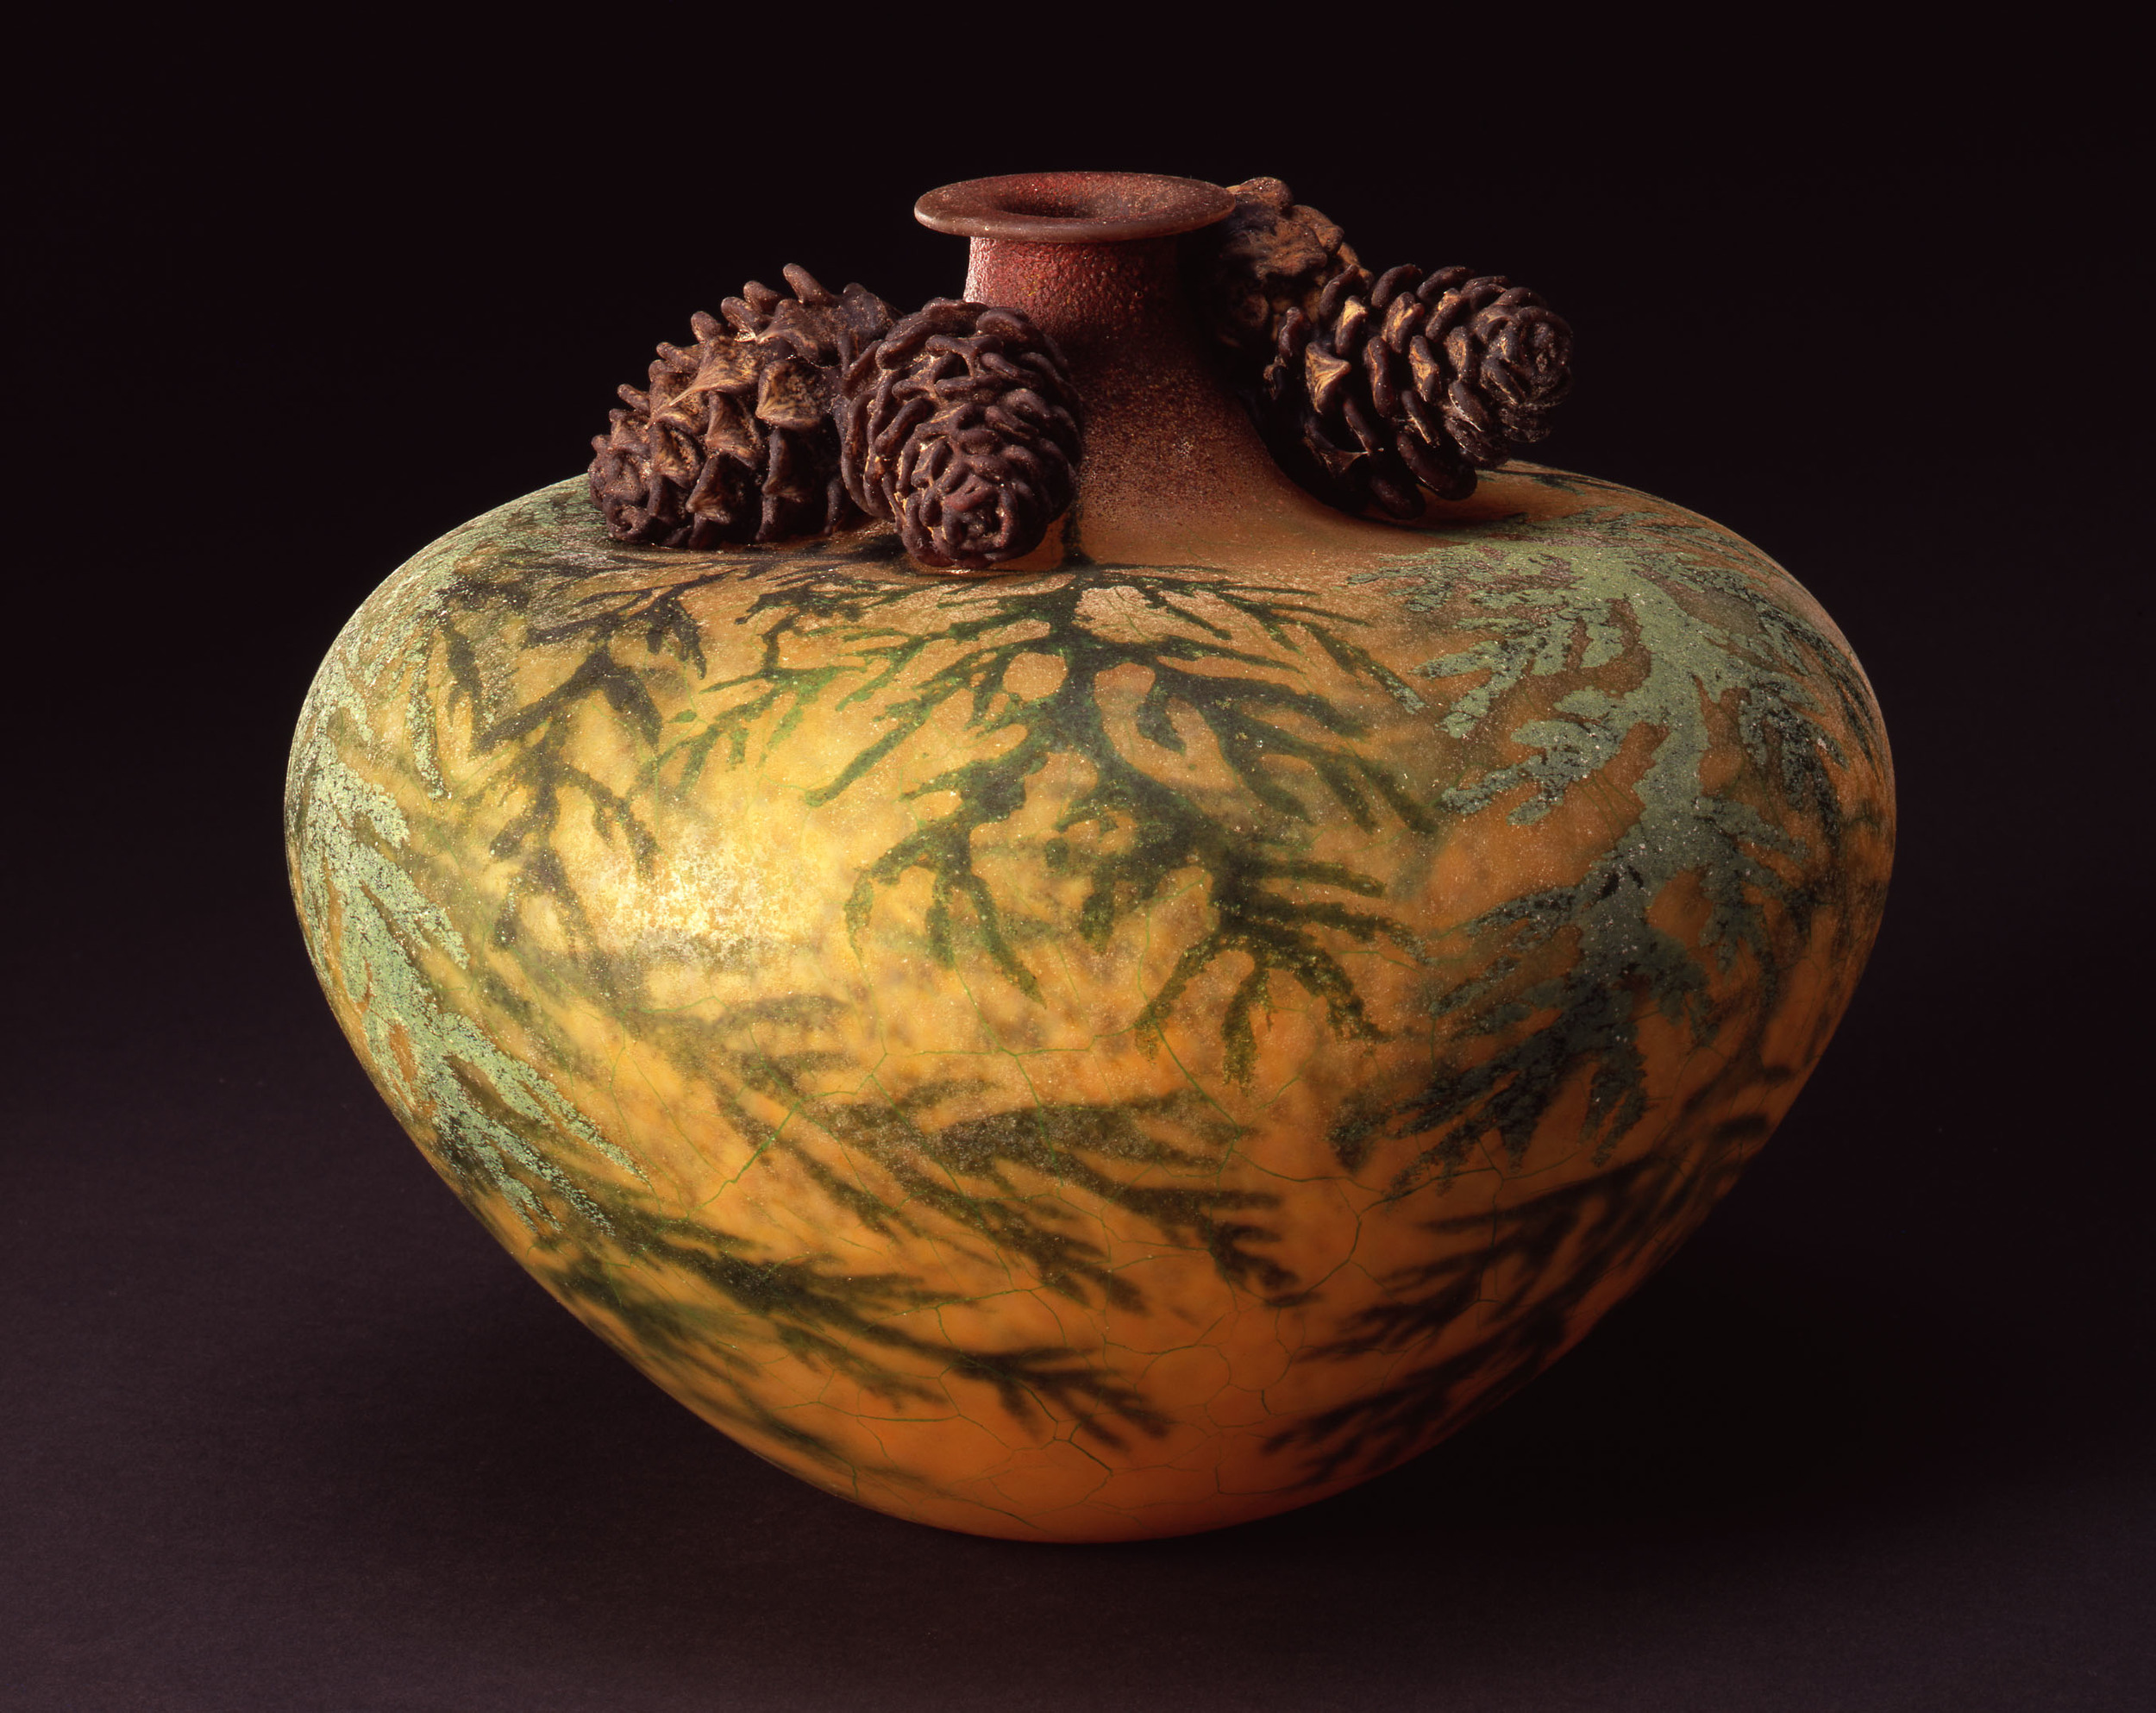  William Morris,  Vase with Cedar Boughs and Cedar Cones  &nbsp; (2004, glass, 7 7/8 x 9 1/8 x 9 1/8 inches), WM.30 